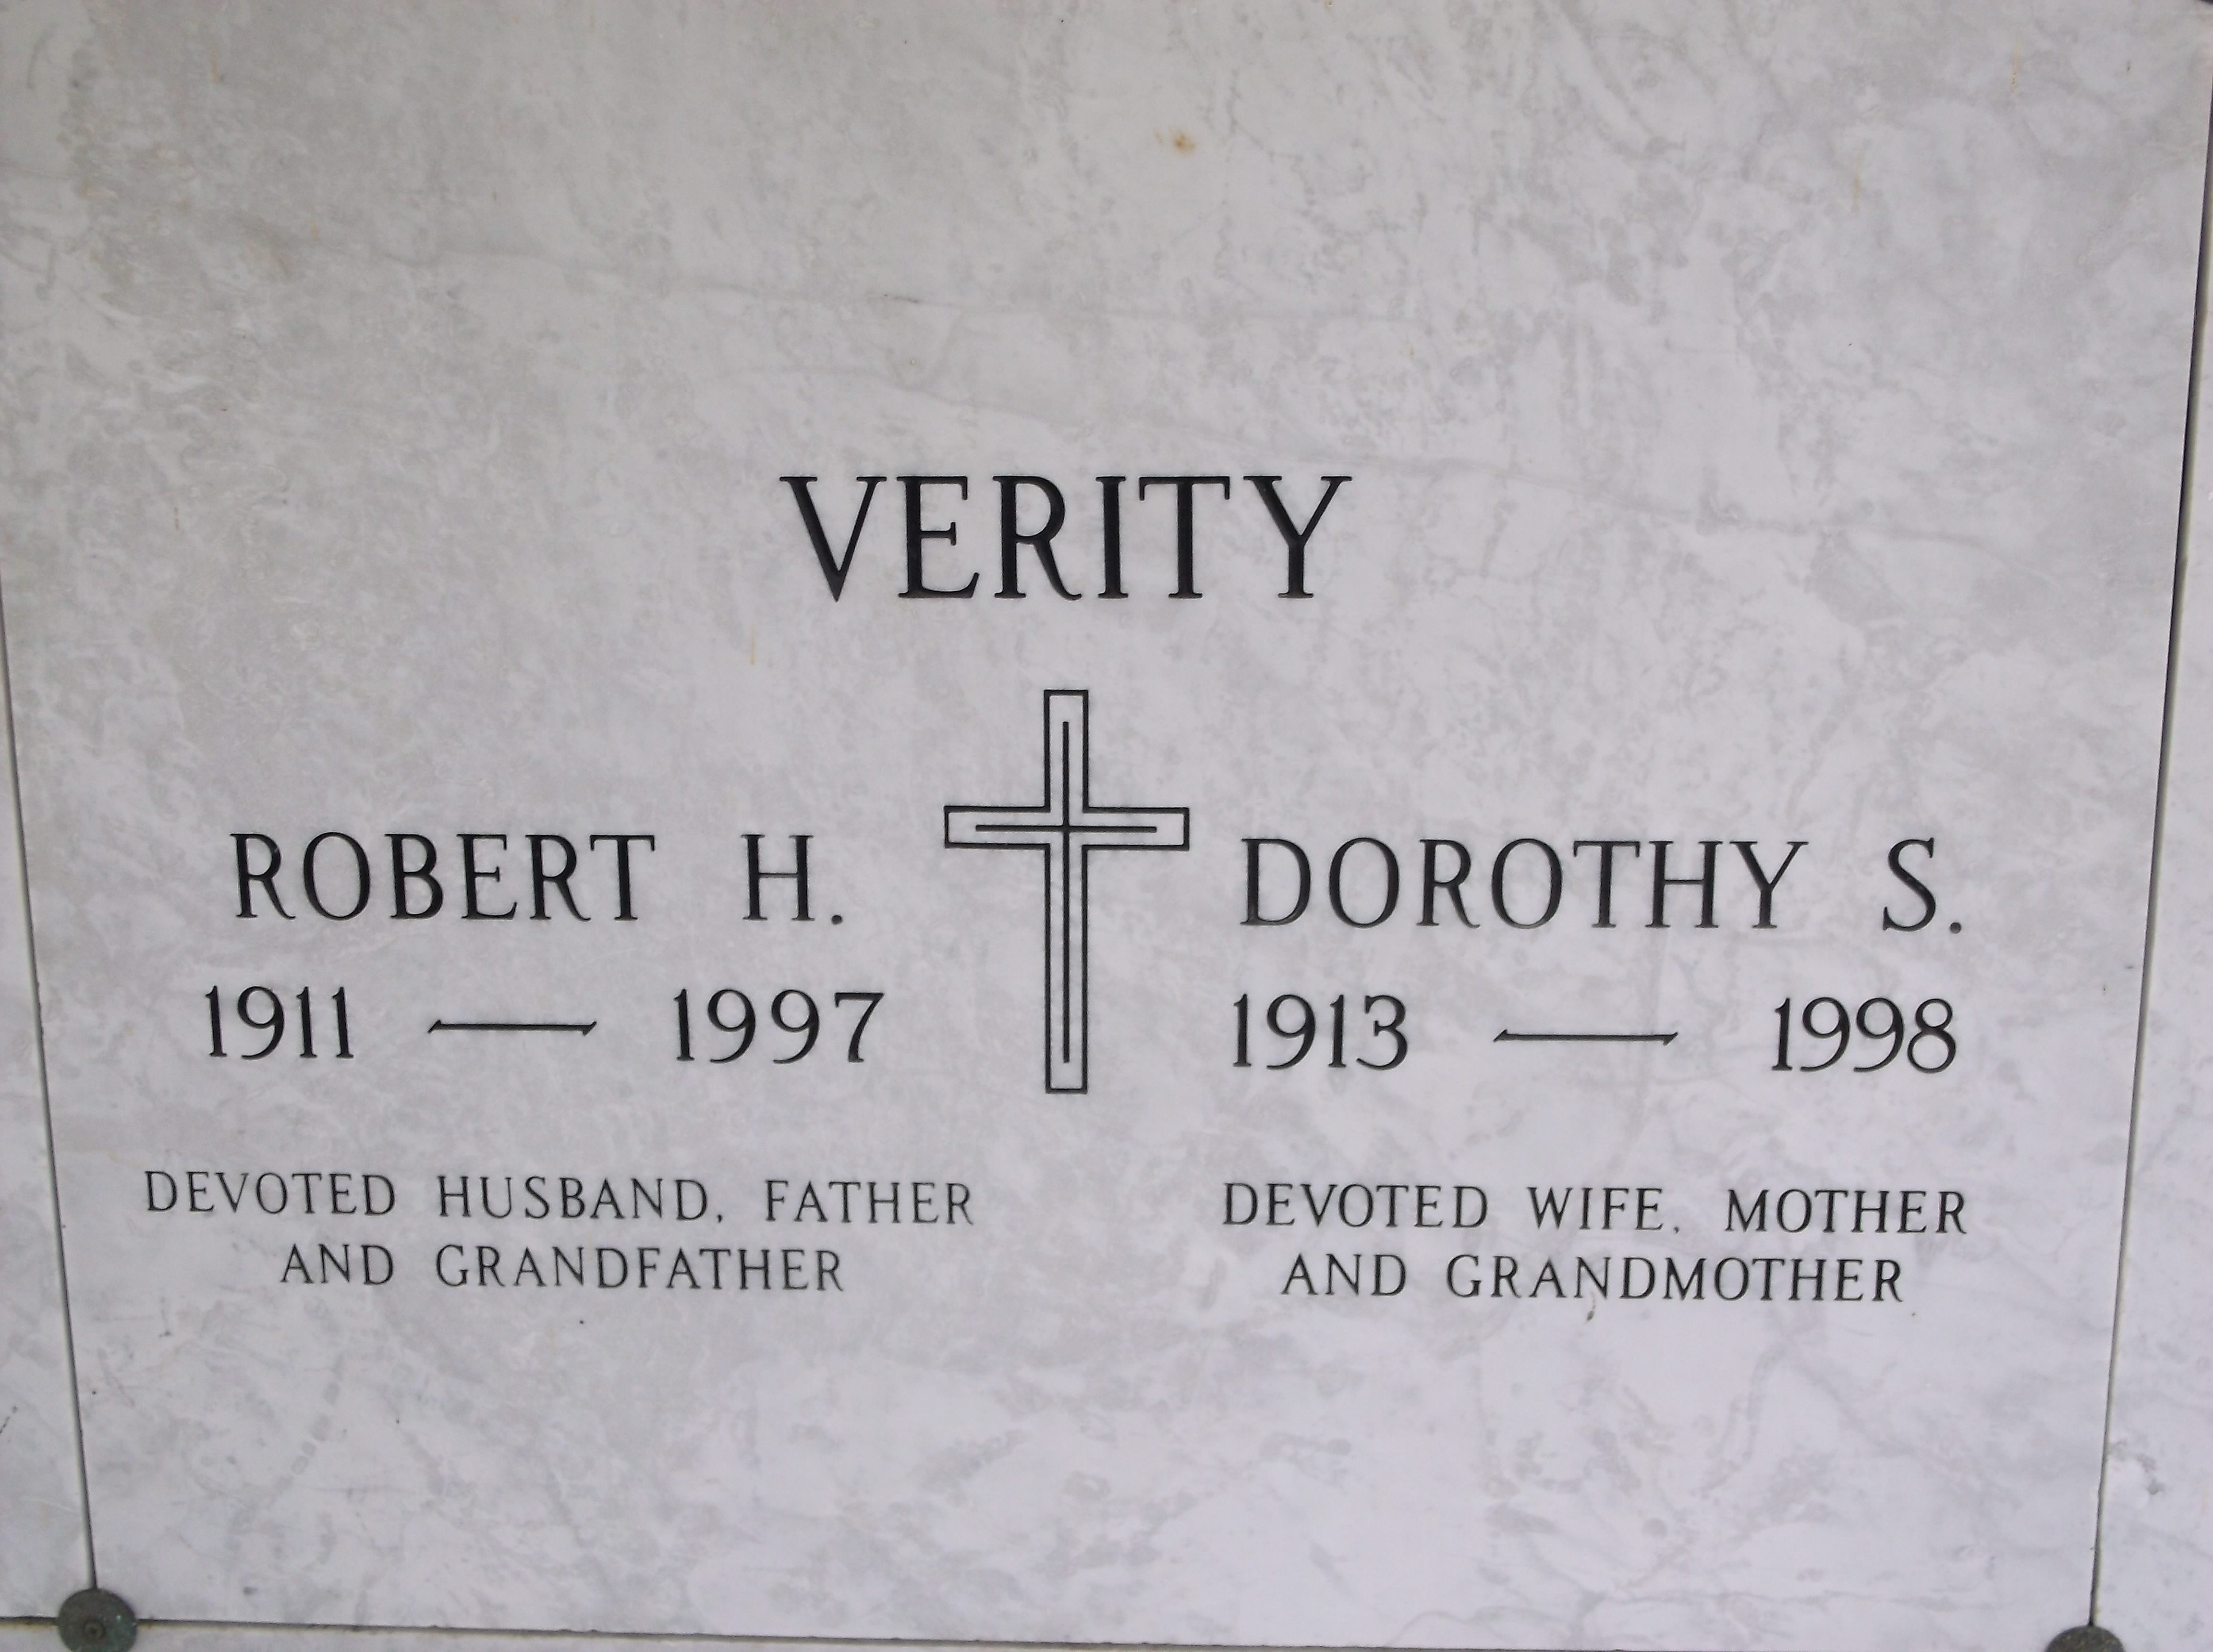 Robert H Verity